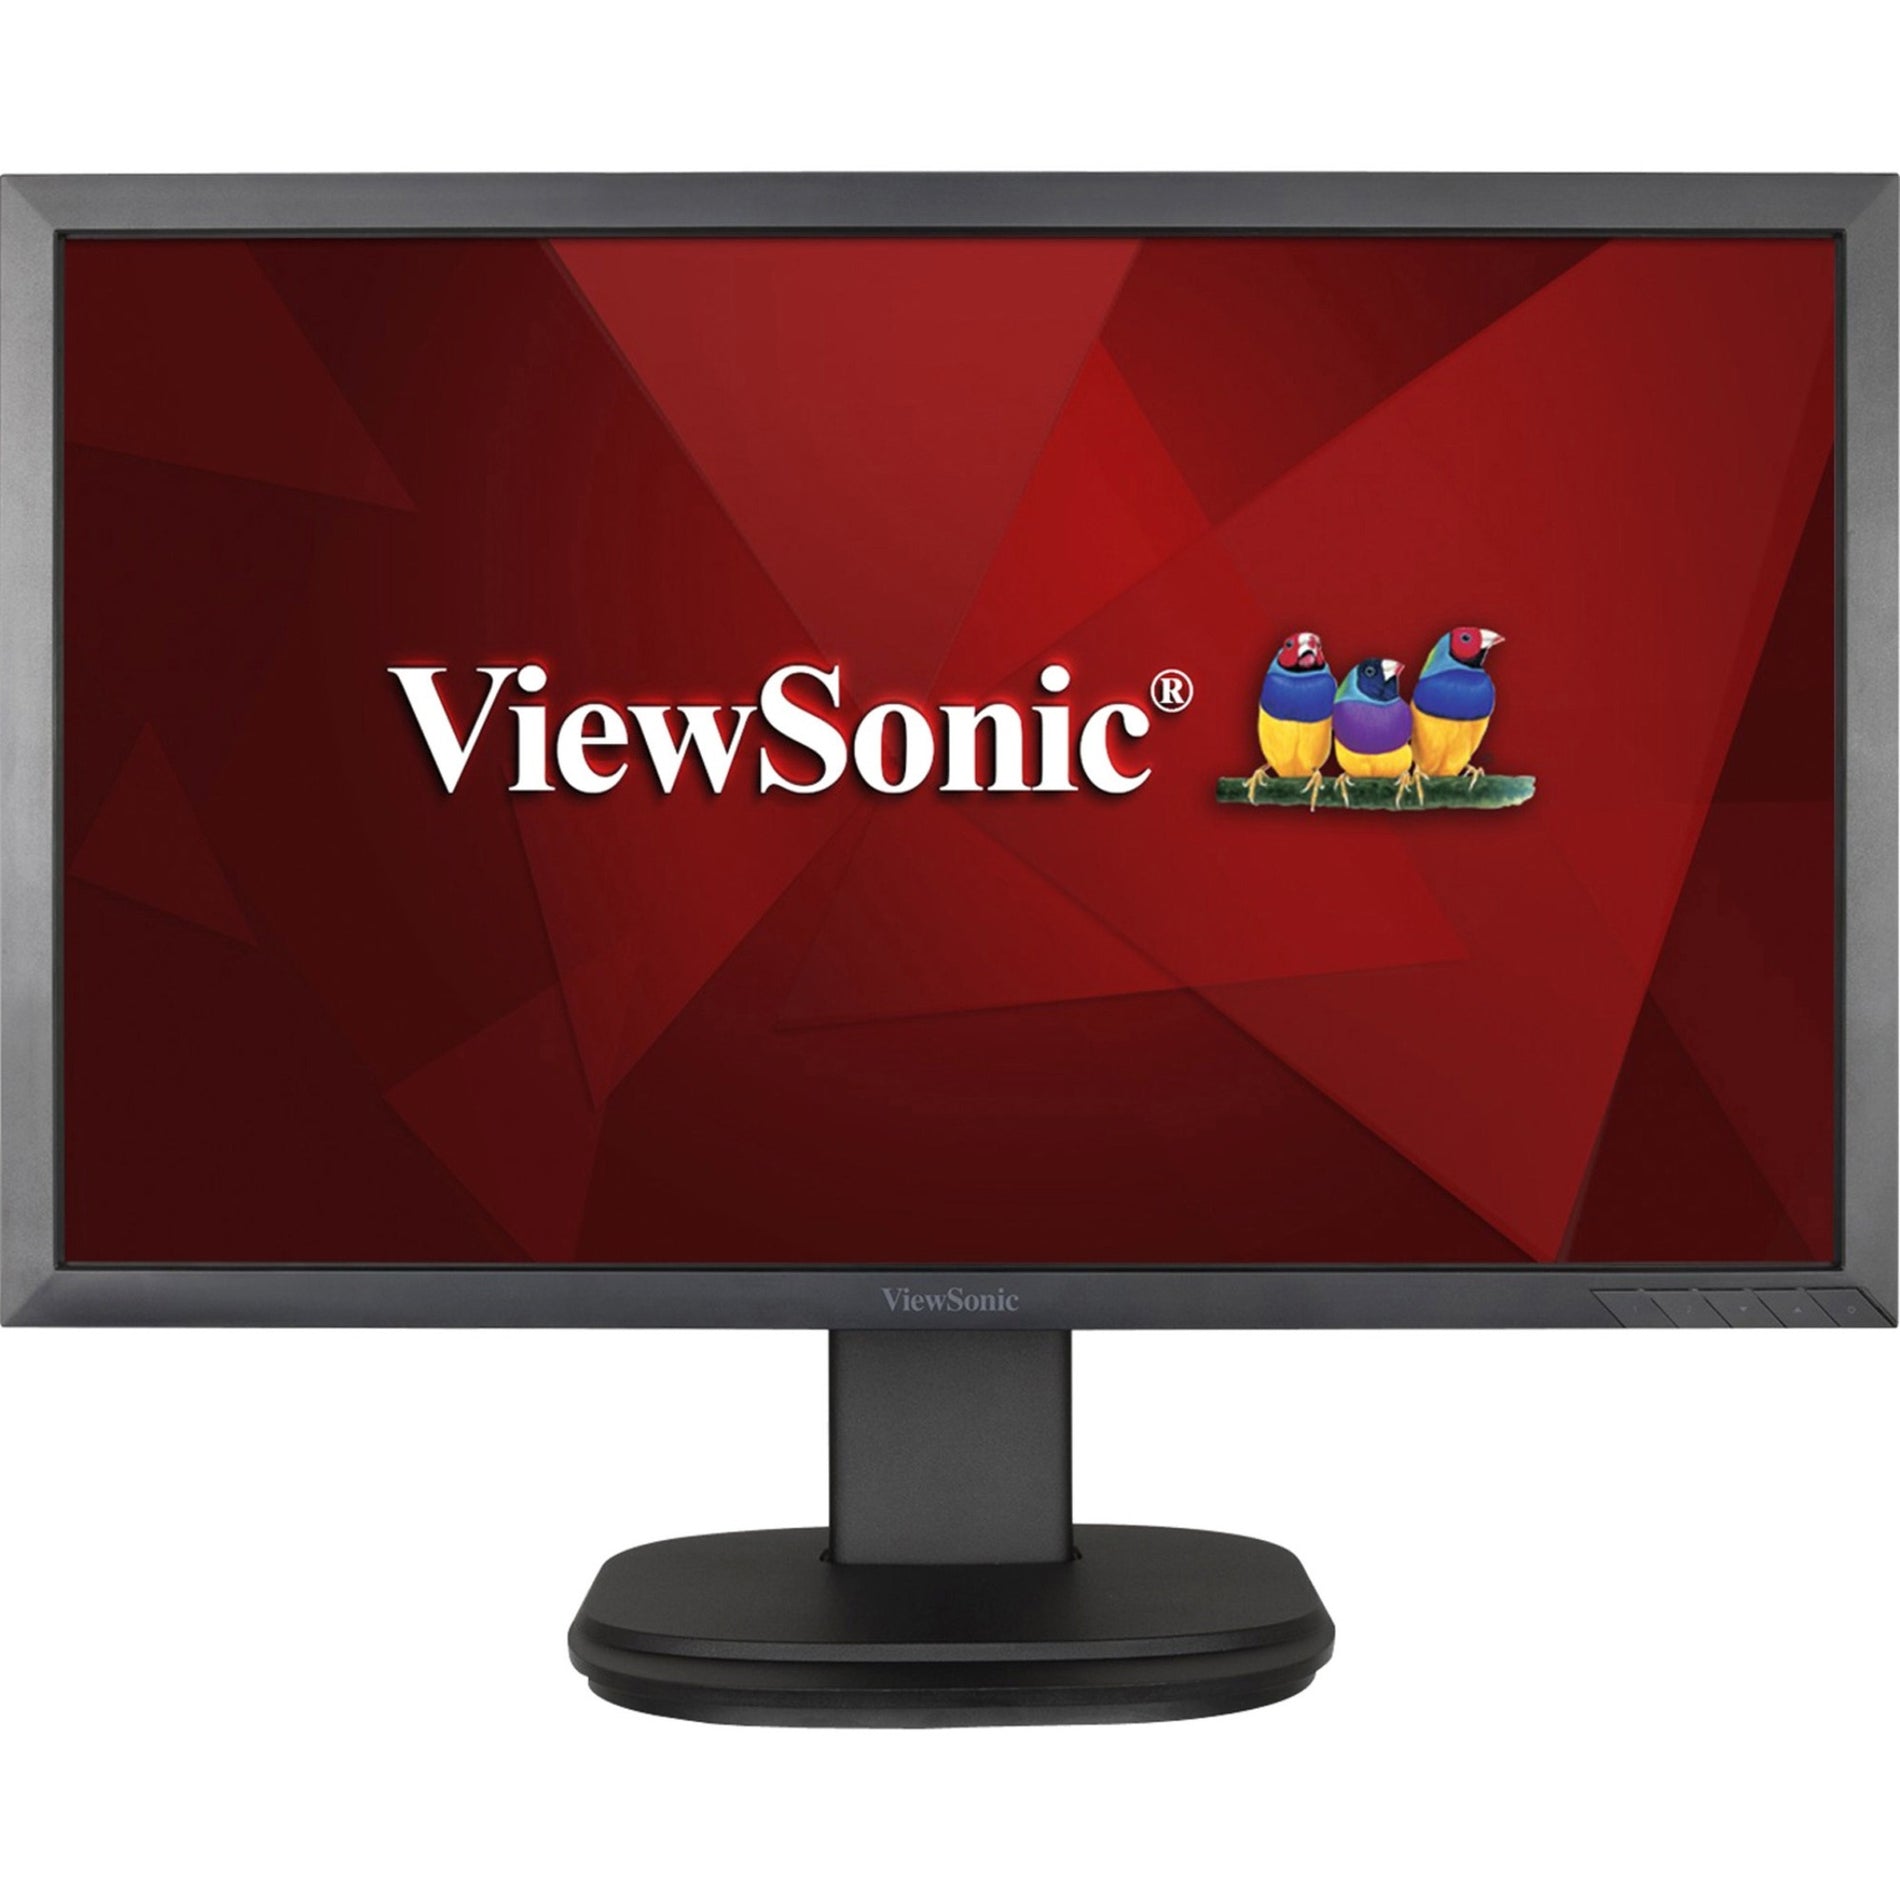 ViewSonic VG2239SMH LED Monitor Full HD, 20-1/5"W x 9-2/5"D x 16-1/2"H, Black